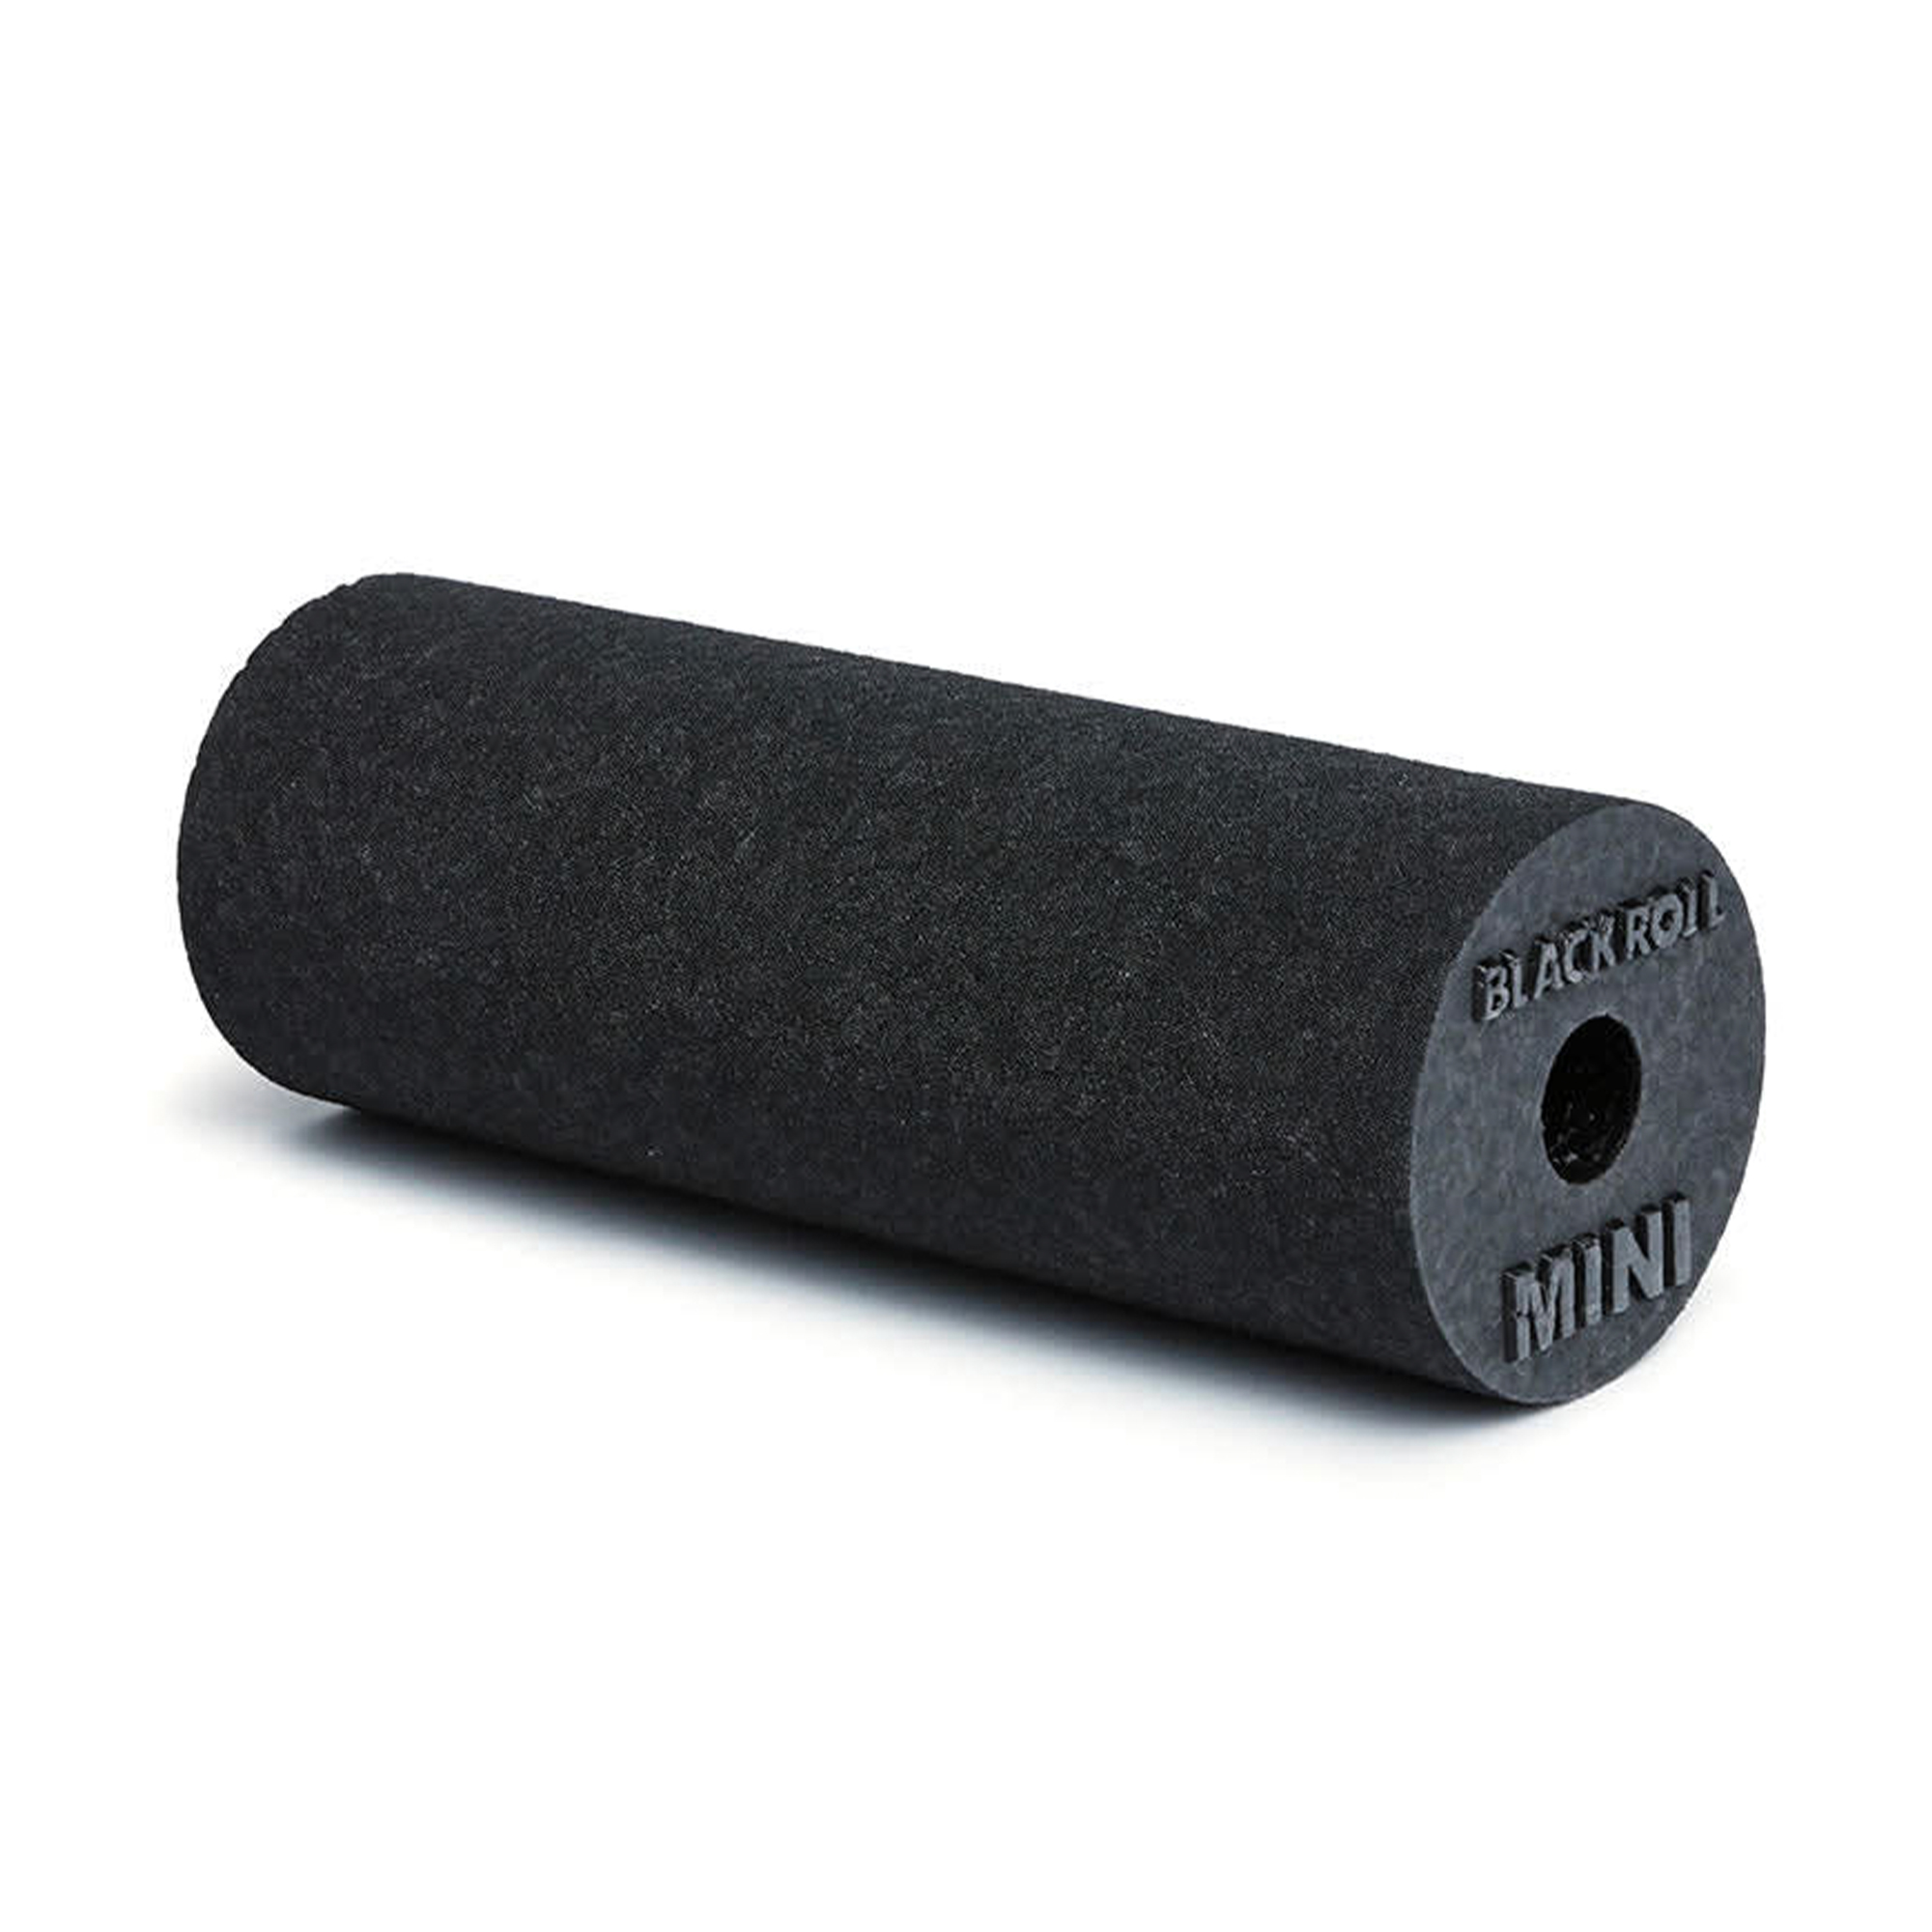 Brug Blackroll Mini Foam Roller Sort - 15 x 6 cm til en forbedret oplevelse